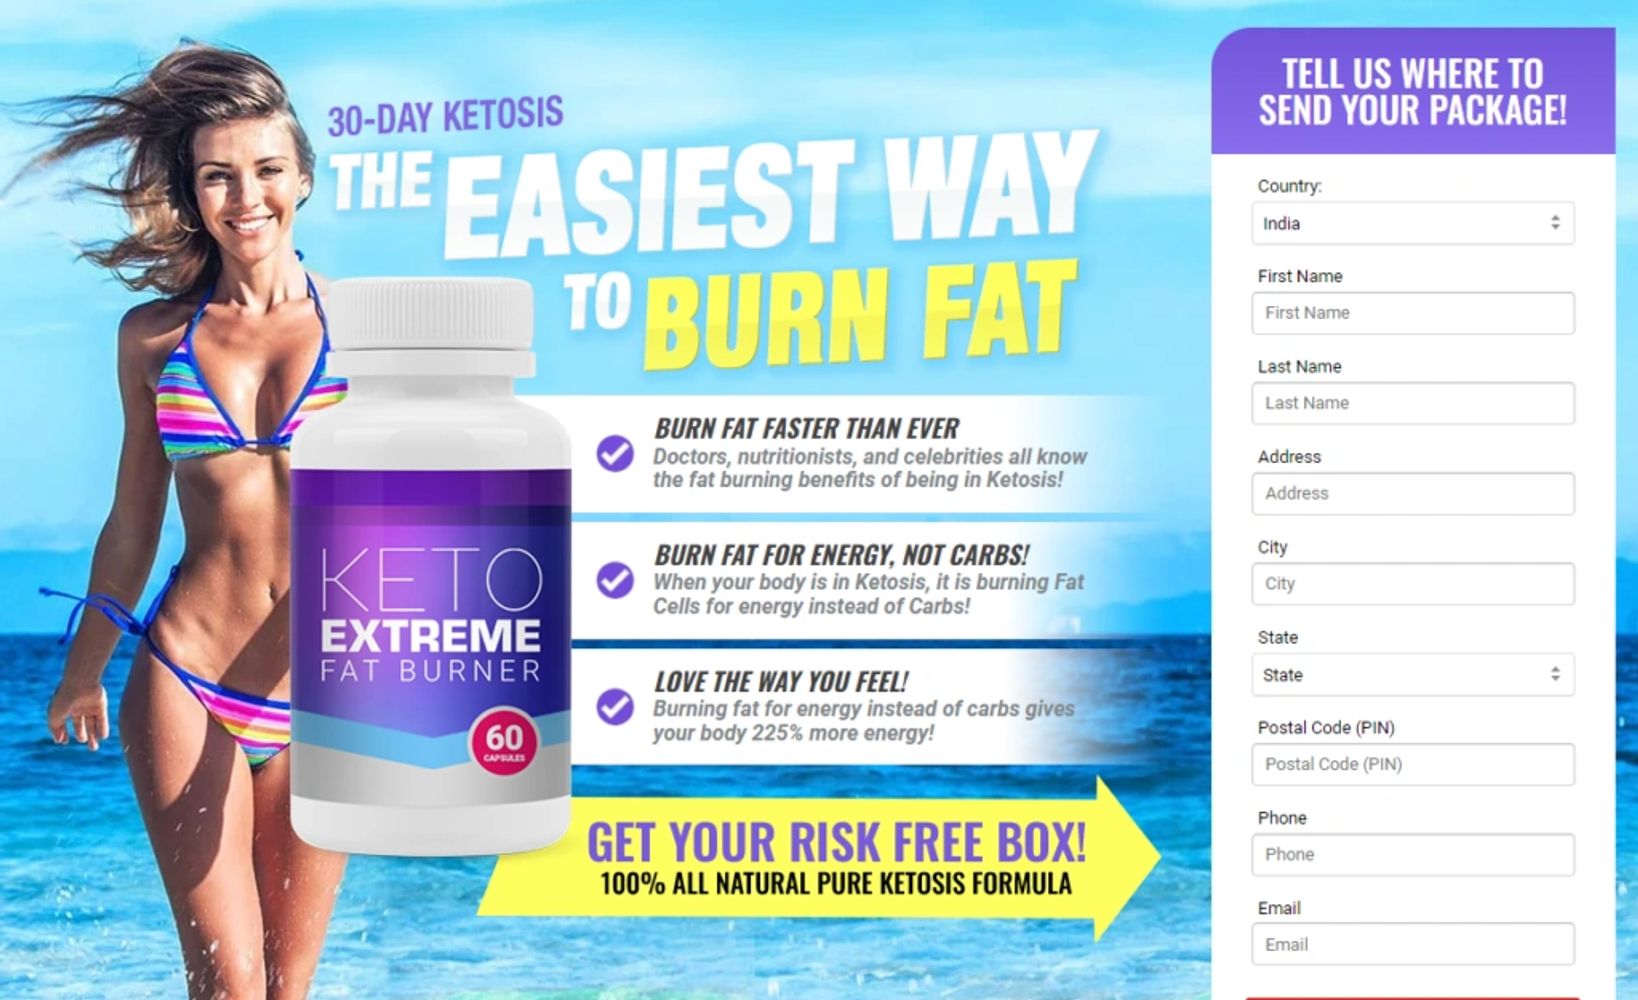 Keto Extreme Fat Burner Australia